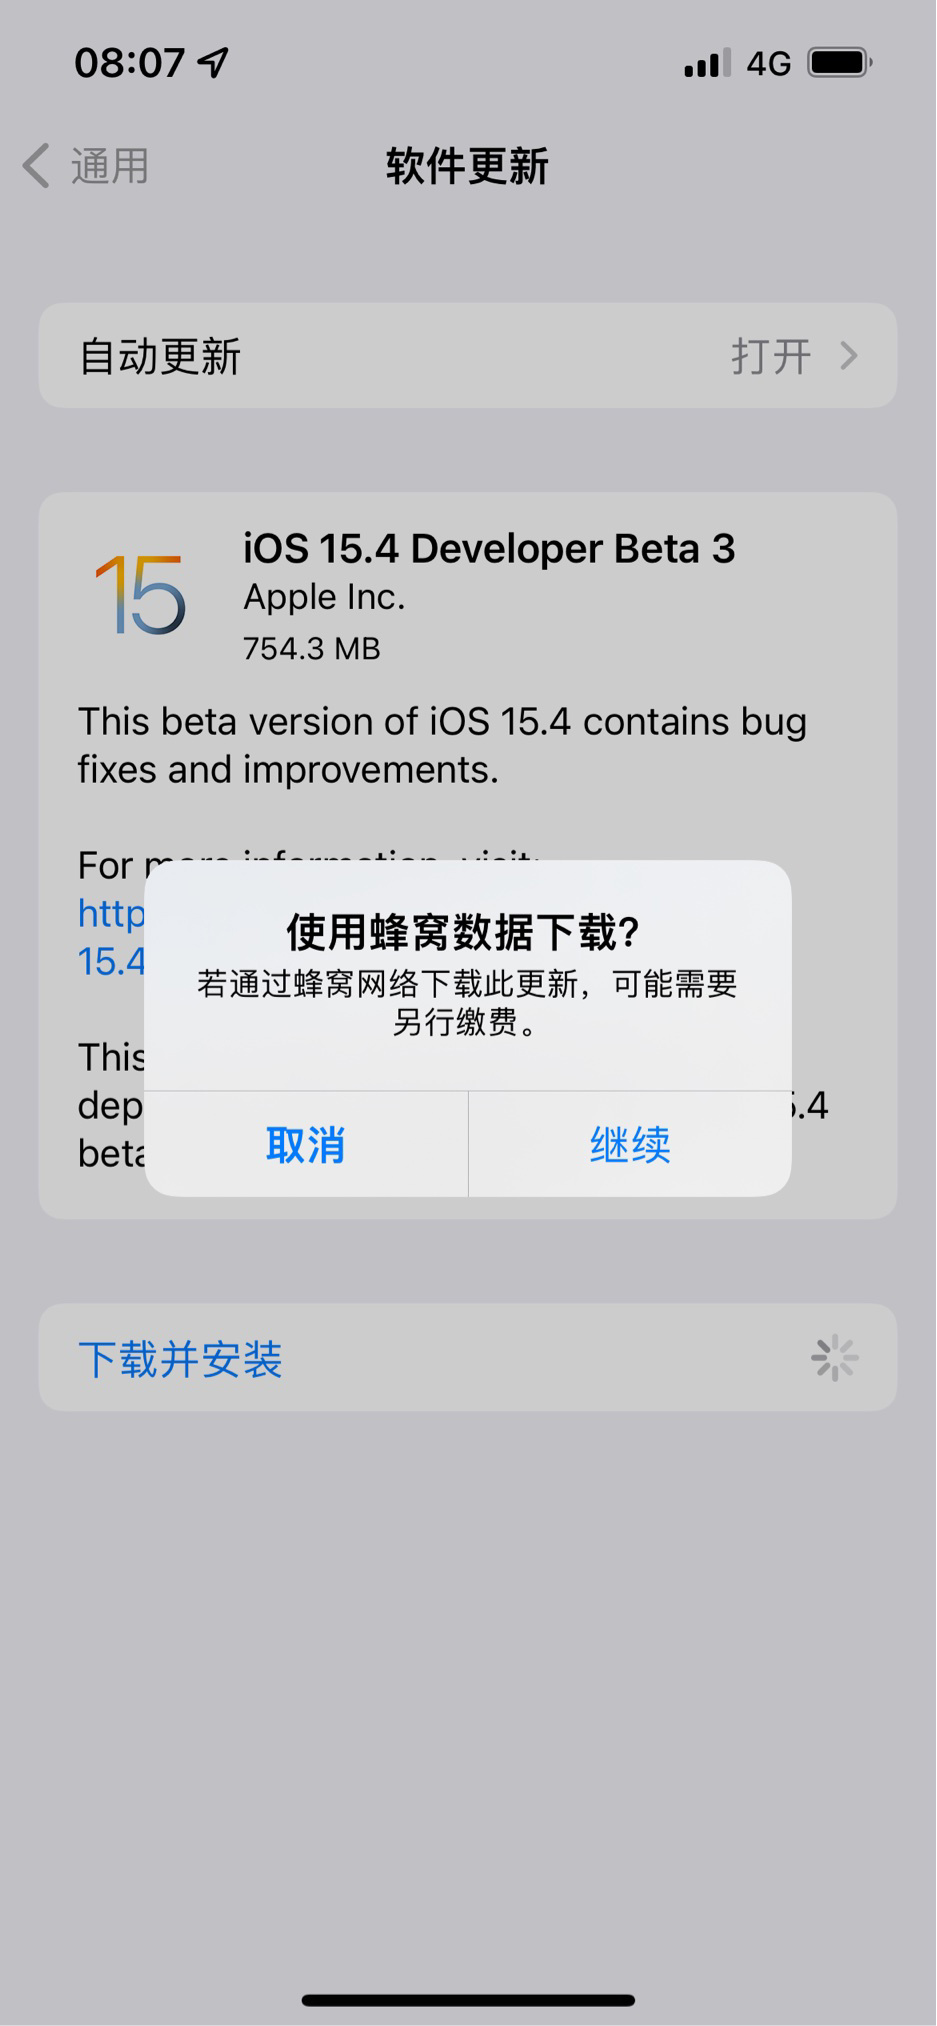 苹果iOS 15.4 Beta 3支持4G蜂窝网络更新系统